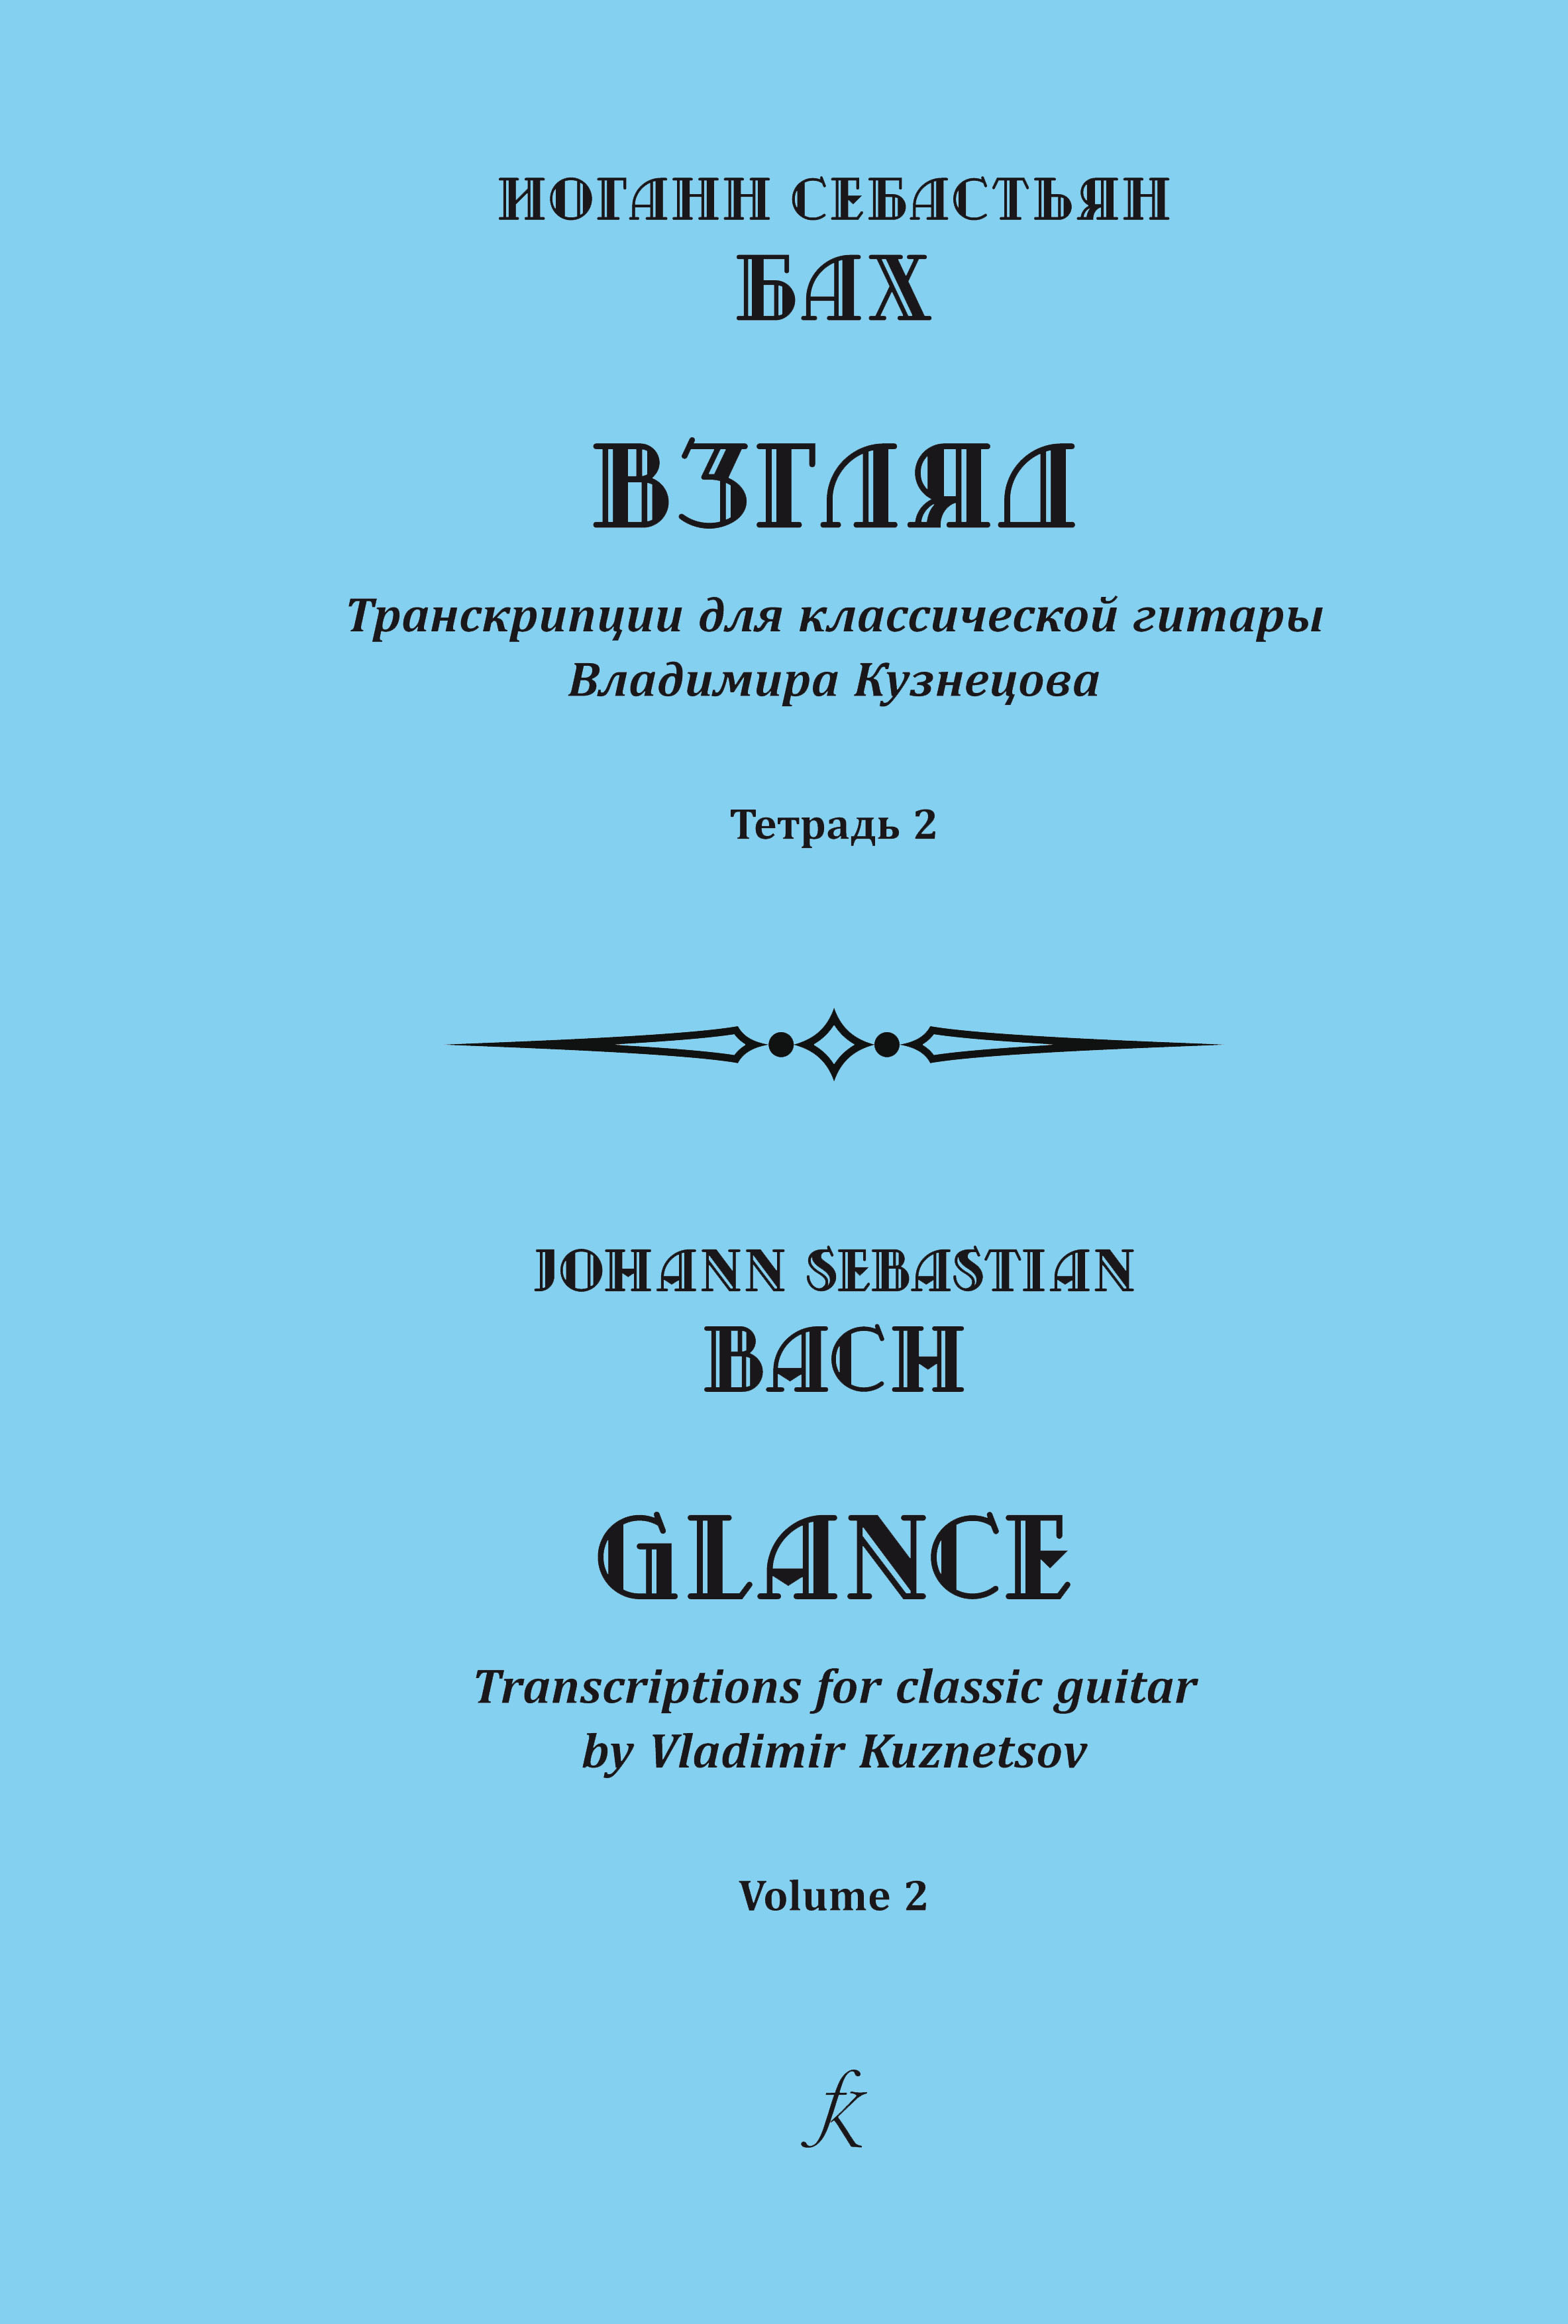 Бах И. С. Взгляд. Транскрипции для классической гитары В. Кузнецова. Тетр. 2